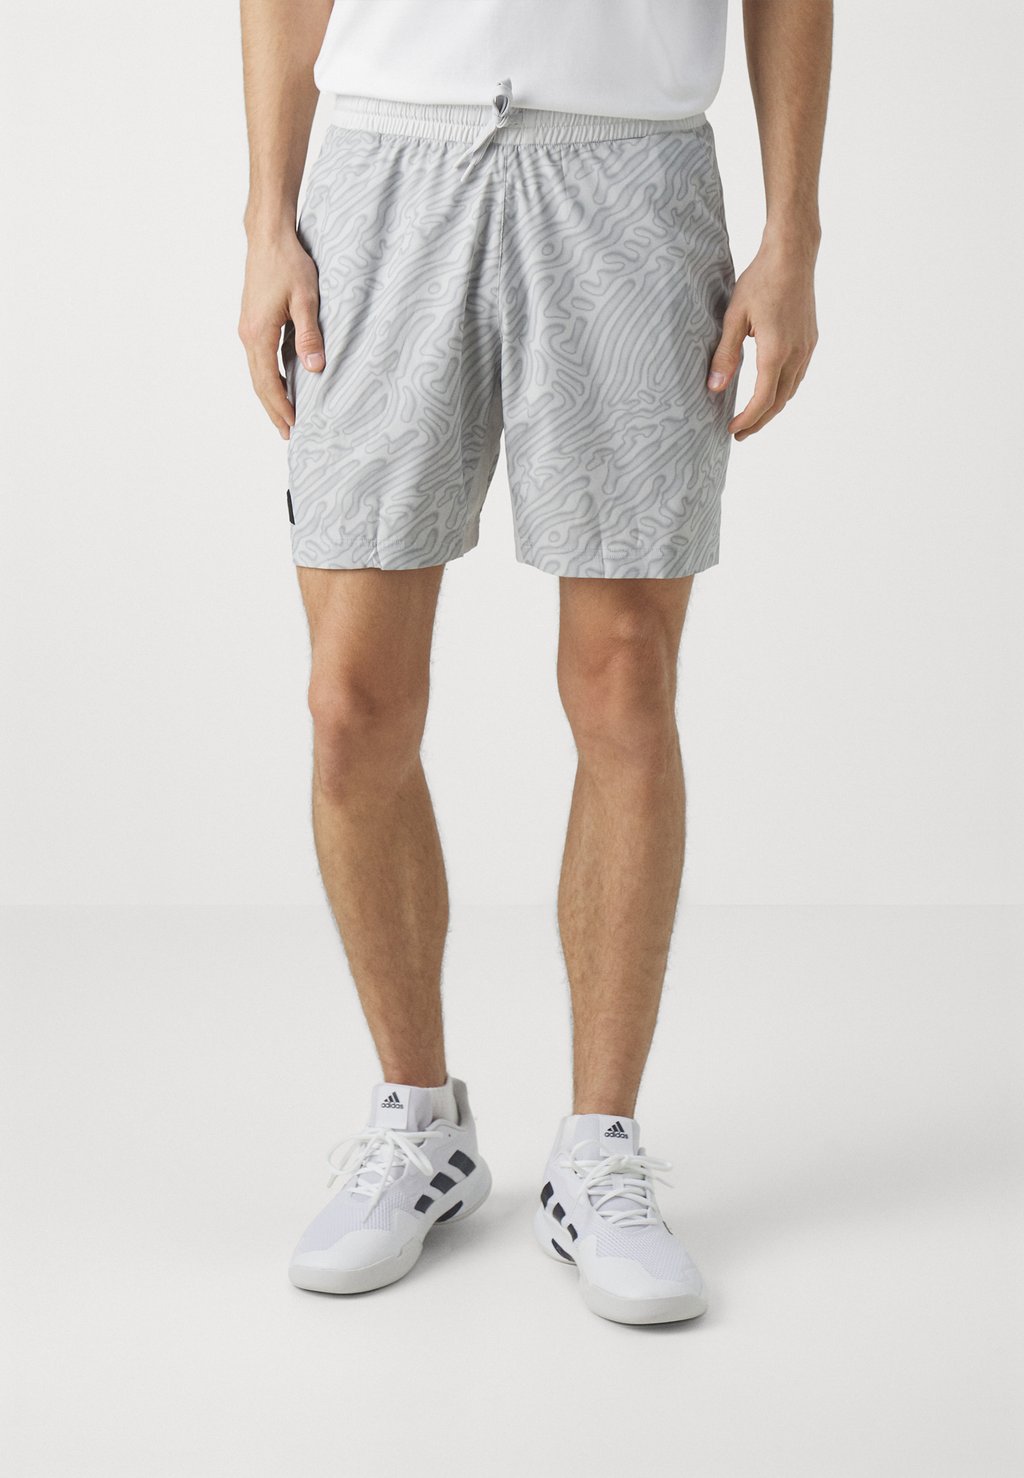 Шорты спортивные Ergo Short Pro Adidas, цвет grey one/solid grey